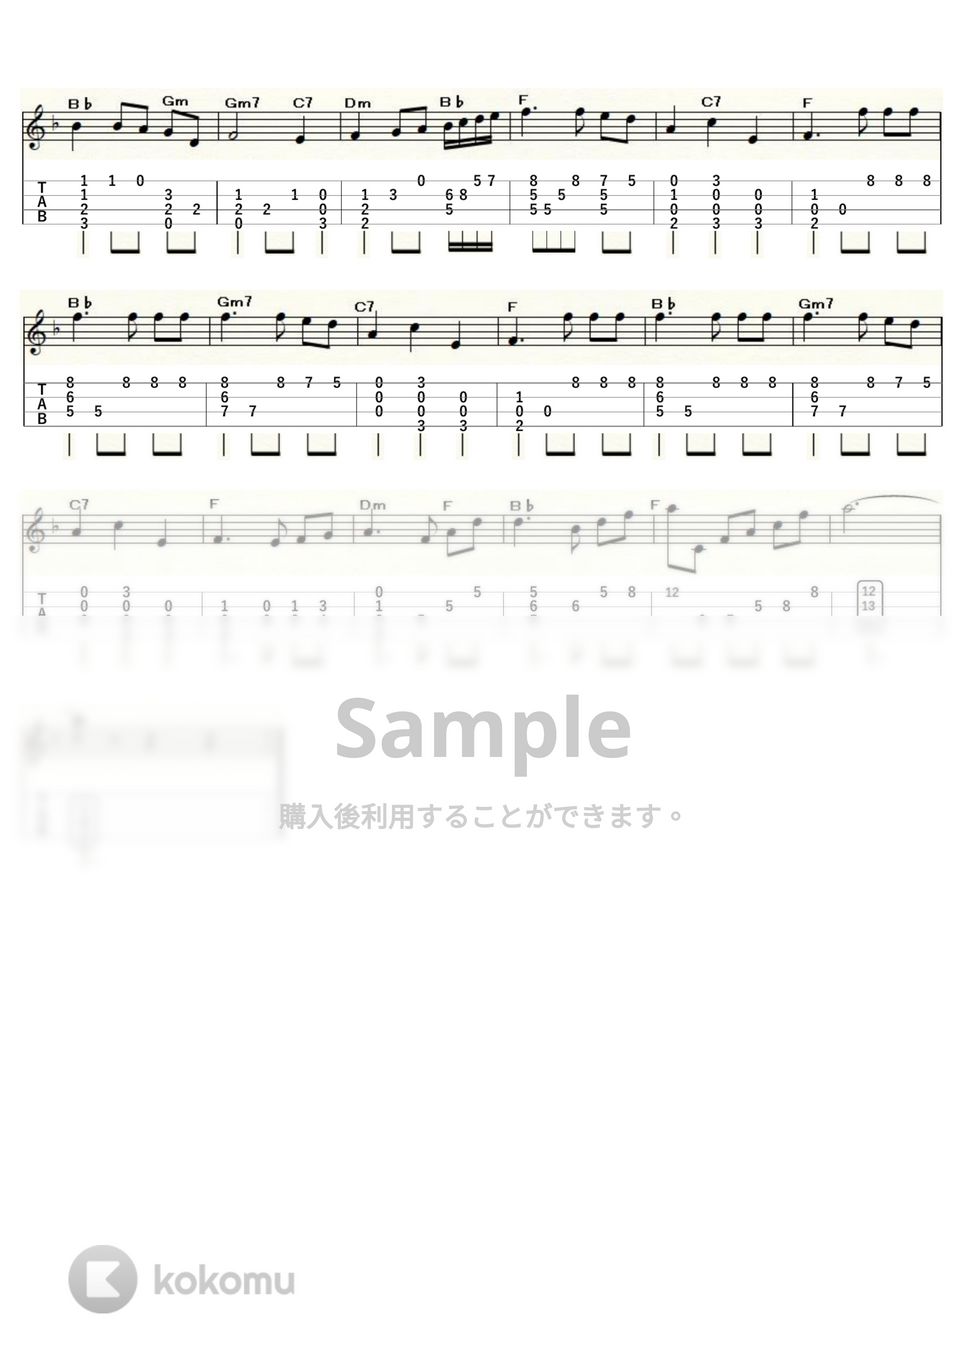 ピエトロ・マスカーニ - カヴァレリア・ルスティカーナ「間奏曲」 (ｳｸﾚﾚｿﾛ/Low-G/中級) by ukulelepapa